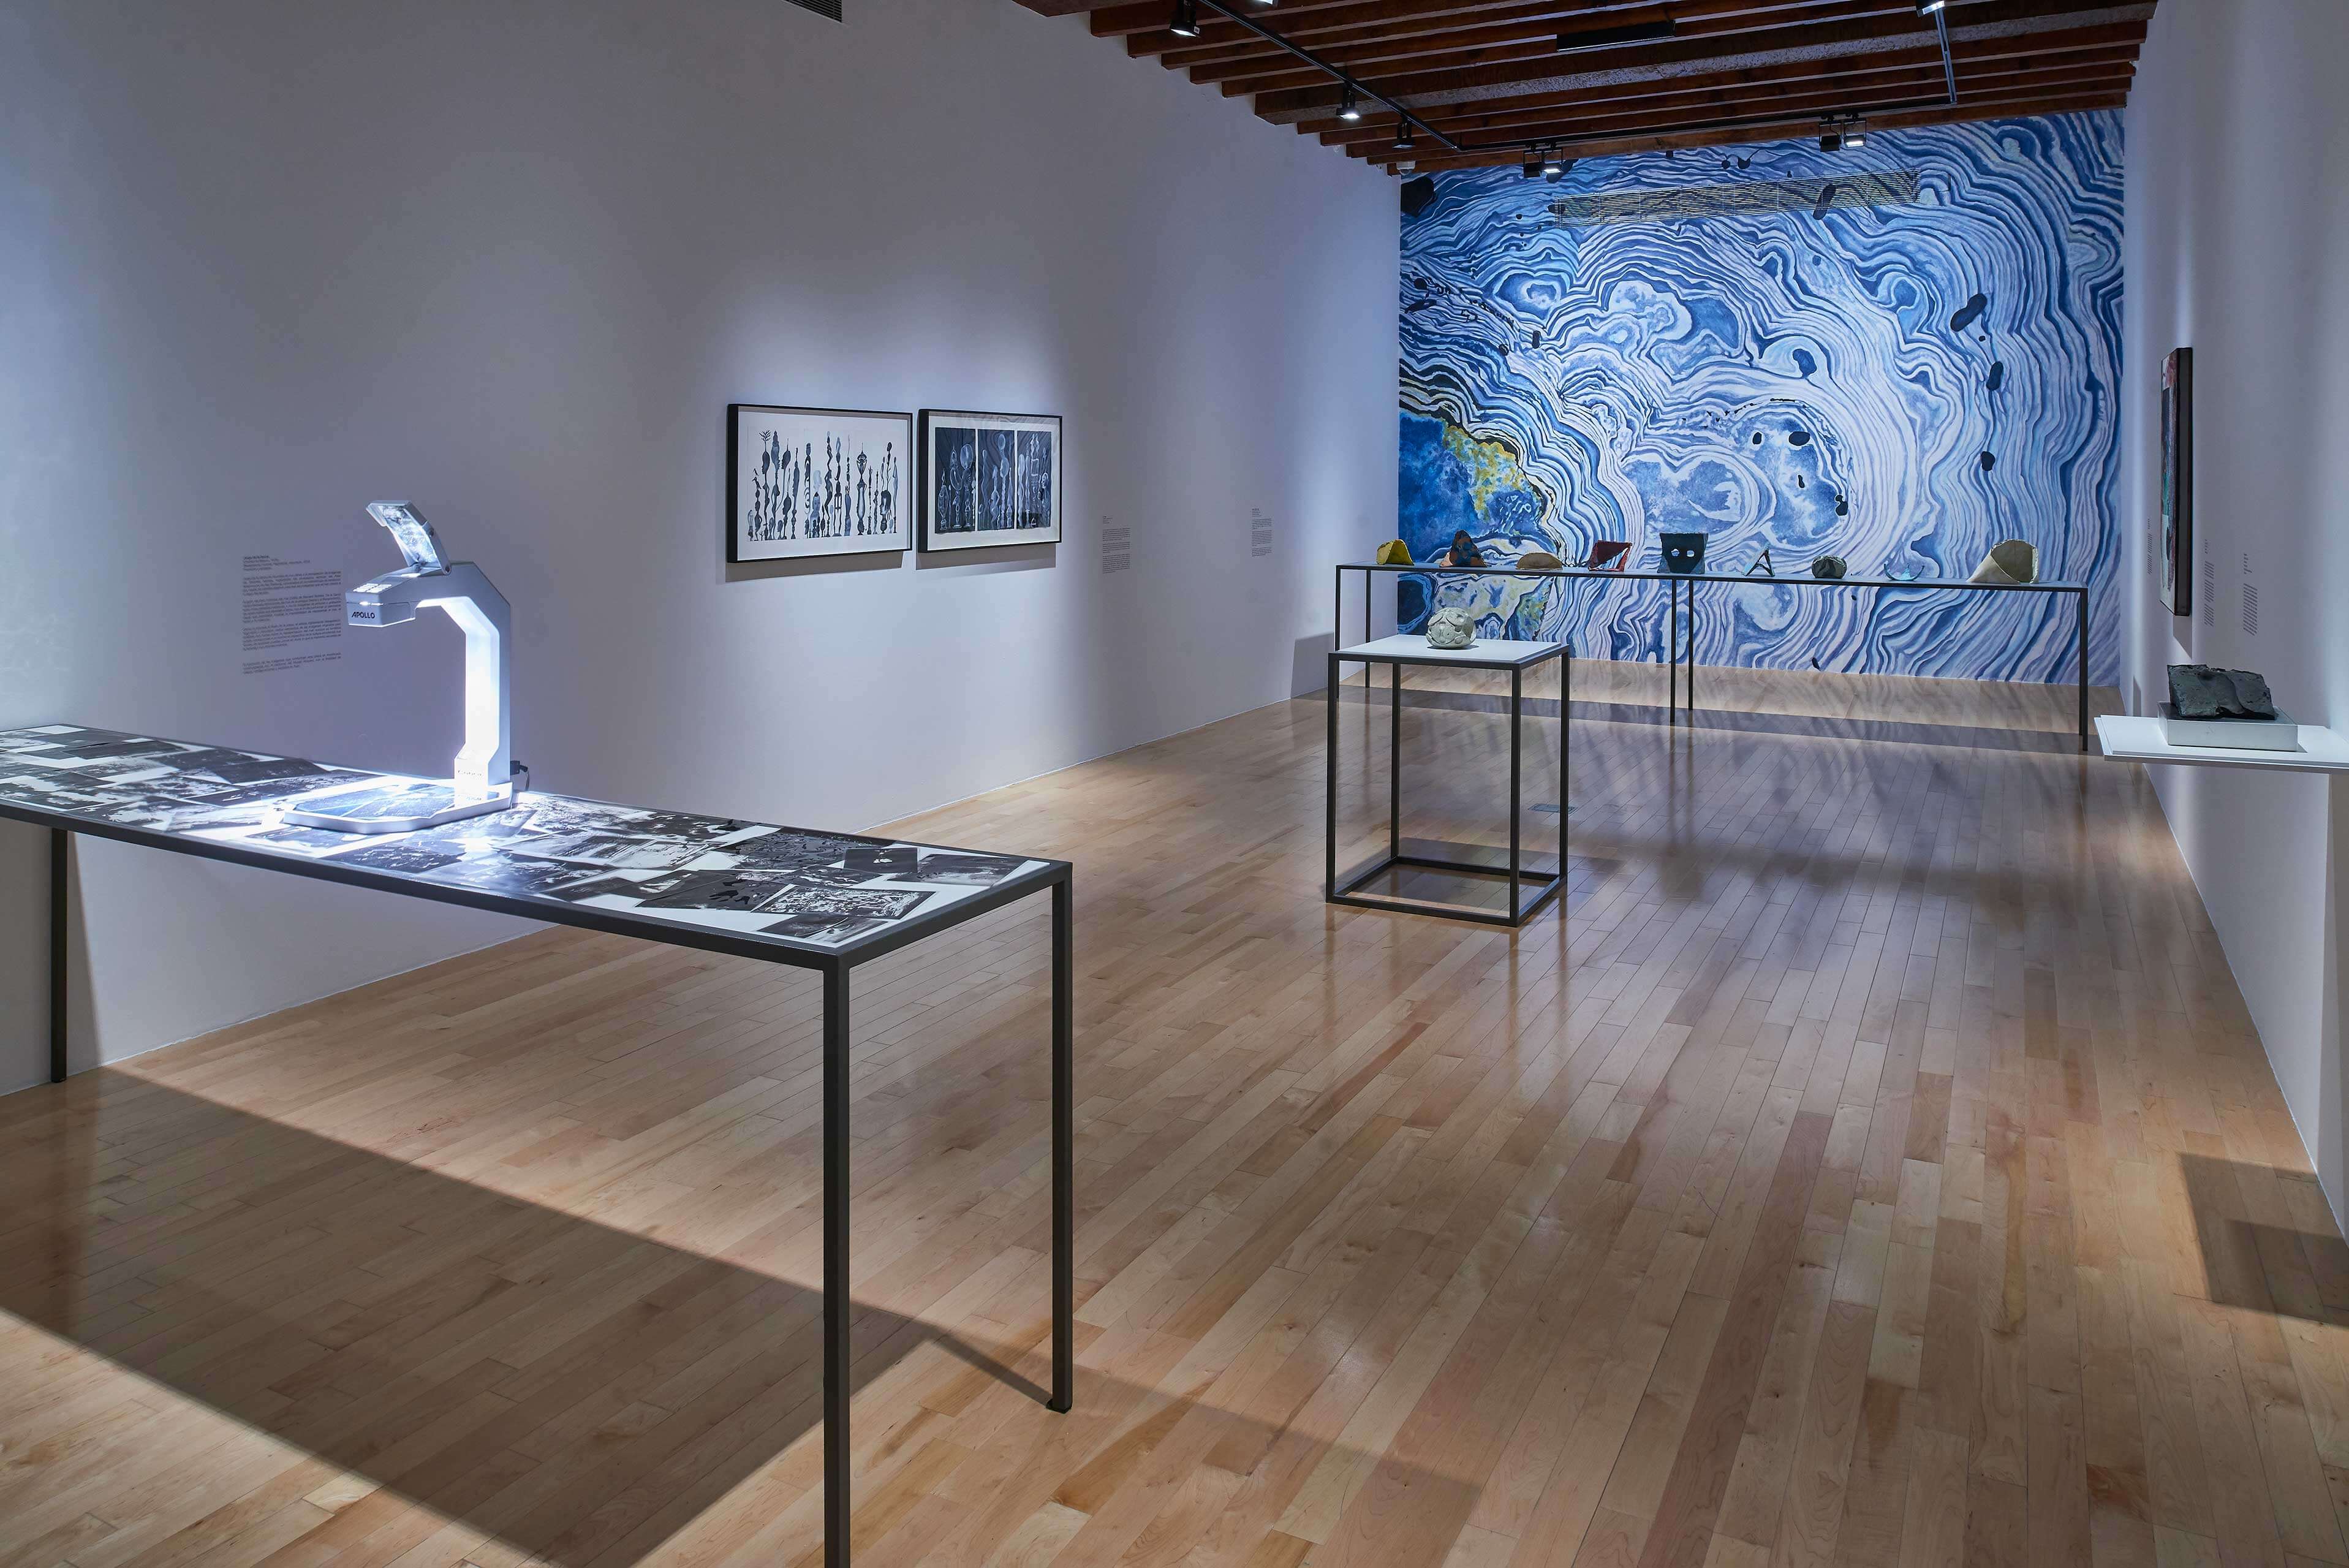 Desaparecer, mostrar, fragmentar, oscurecer | El tiempo en las cosas. Salas de Arte Contemporáneo | Museo Amparo, Puebla